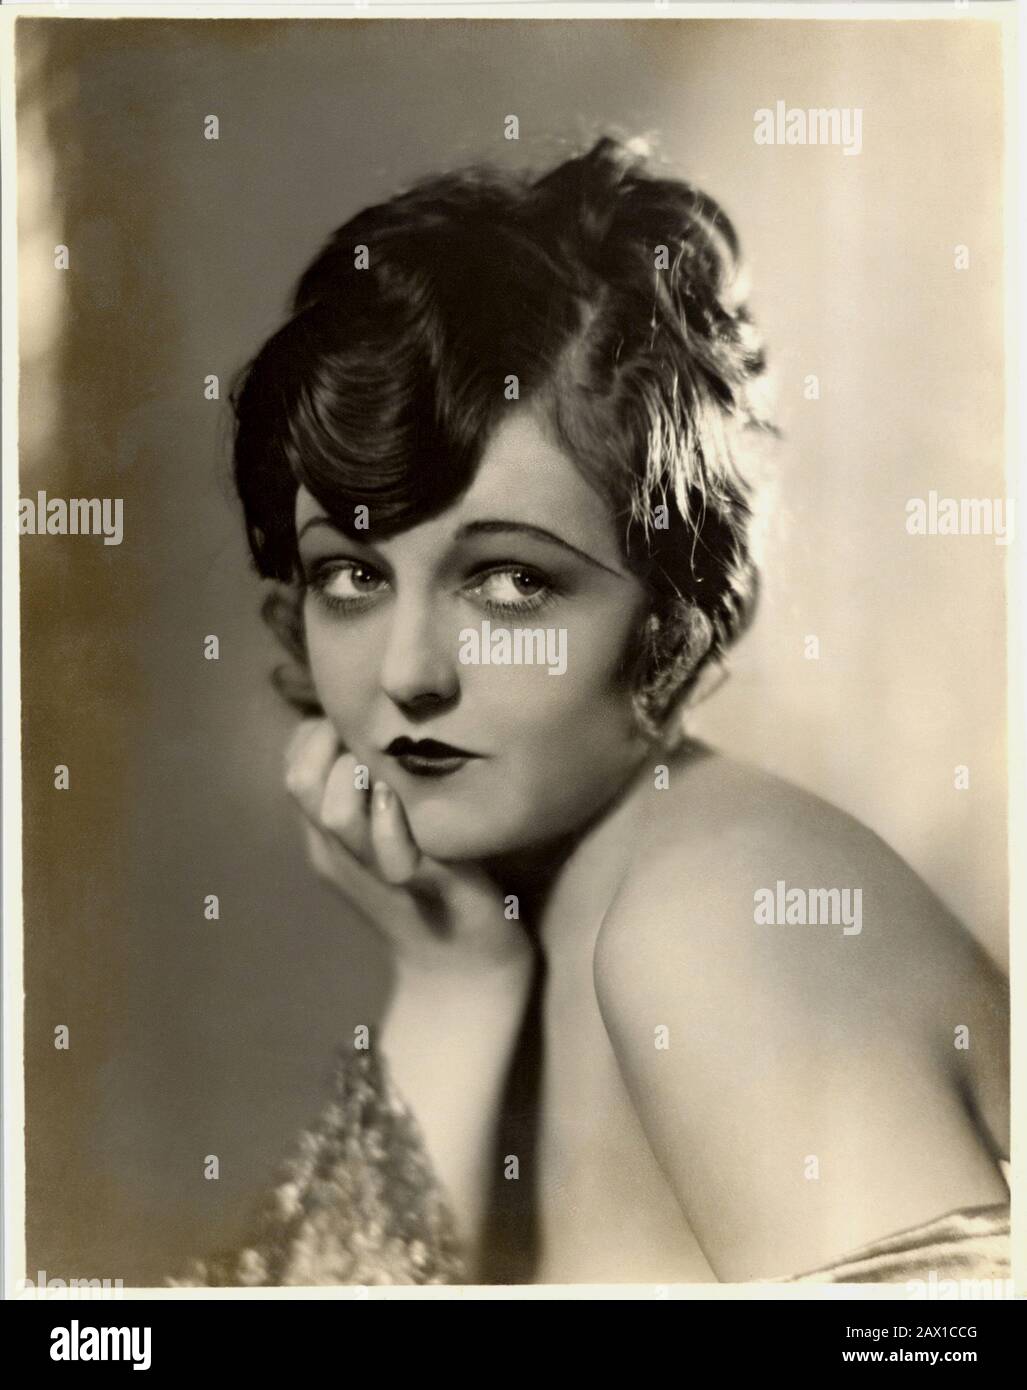 1927 ca : The silent movie actress DORIS DAWSON ( 1909 – 1986 )  - FILM - CINEMA MUTO - SILENT MOVIE - attrice cinematografica - VAMP  - DIVA - DIVINA - DIVINE - 20's - '20 - ANNI VENTI  - neckopening - scollatura -    decolleté - red lips - labbra rosse - rossetto - lipstick - ANNI FOLLI del CHARLESTON ---- ARCHIVIO GBB Stock Photo